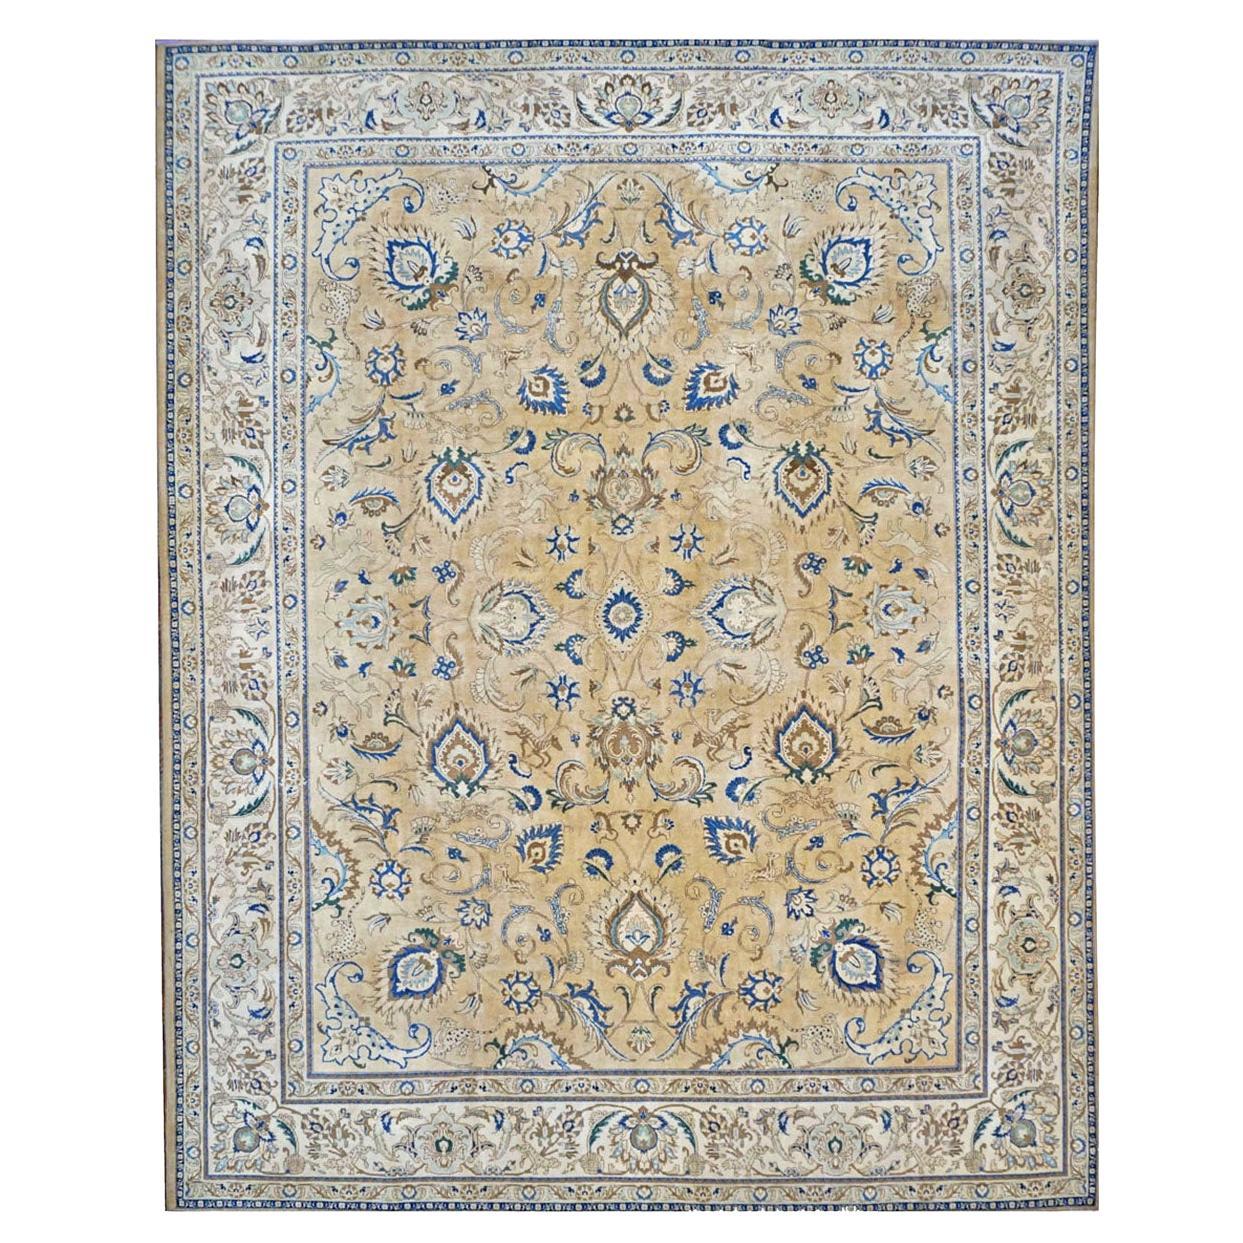 Antiker persischer Tabriz-Teppich des 20. Jahrhunderts 10x12 in Hellbraun, Elfenbein und Blau, handgefertigt